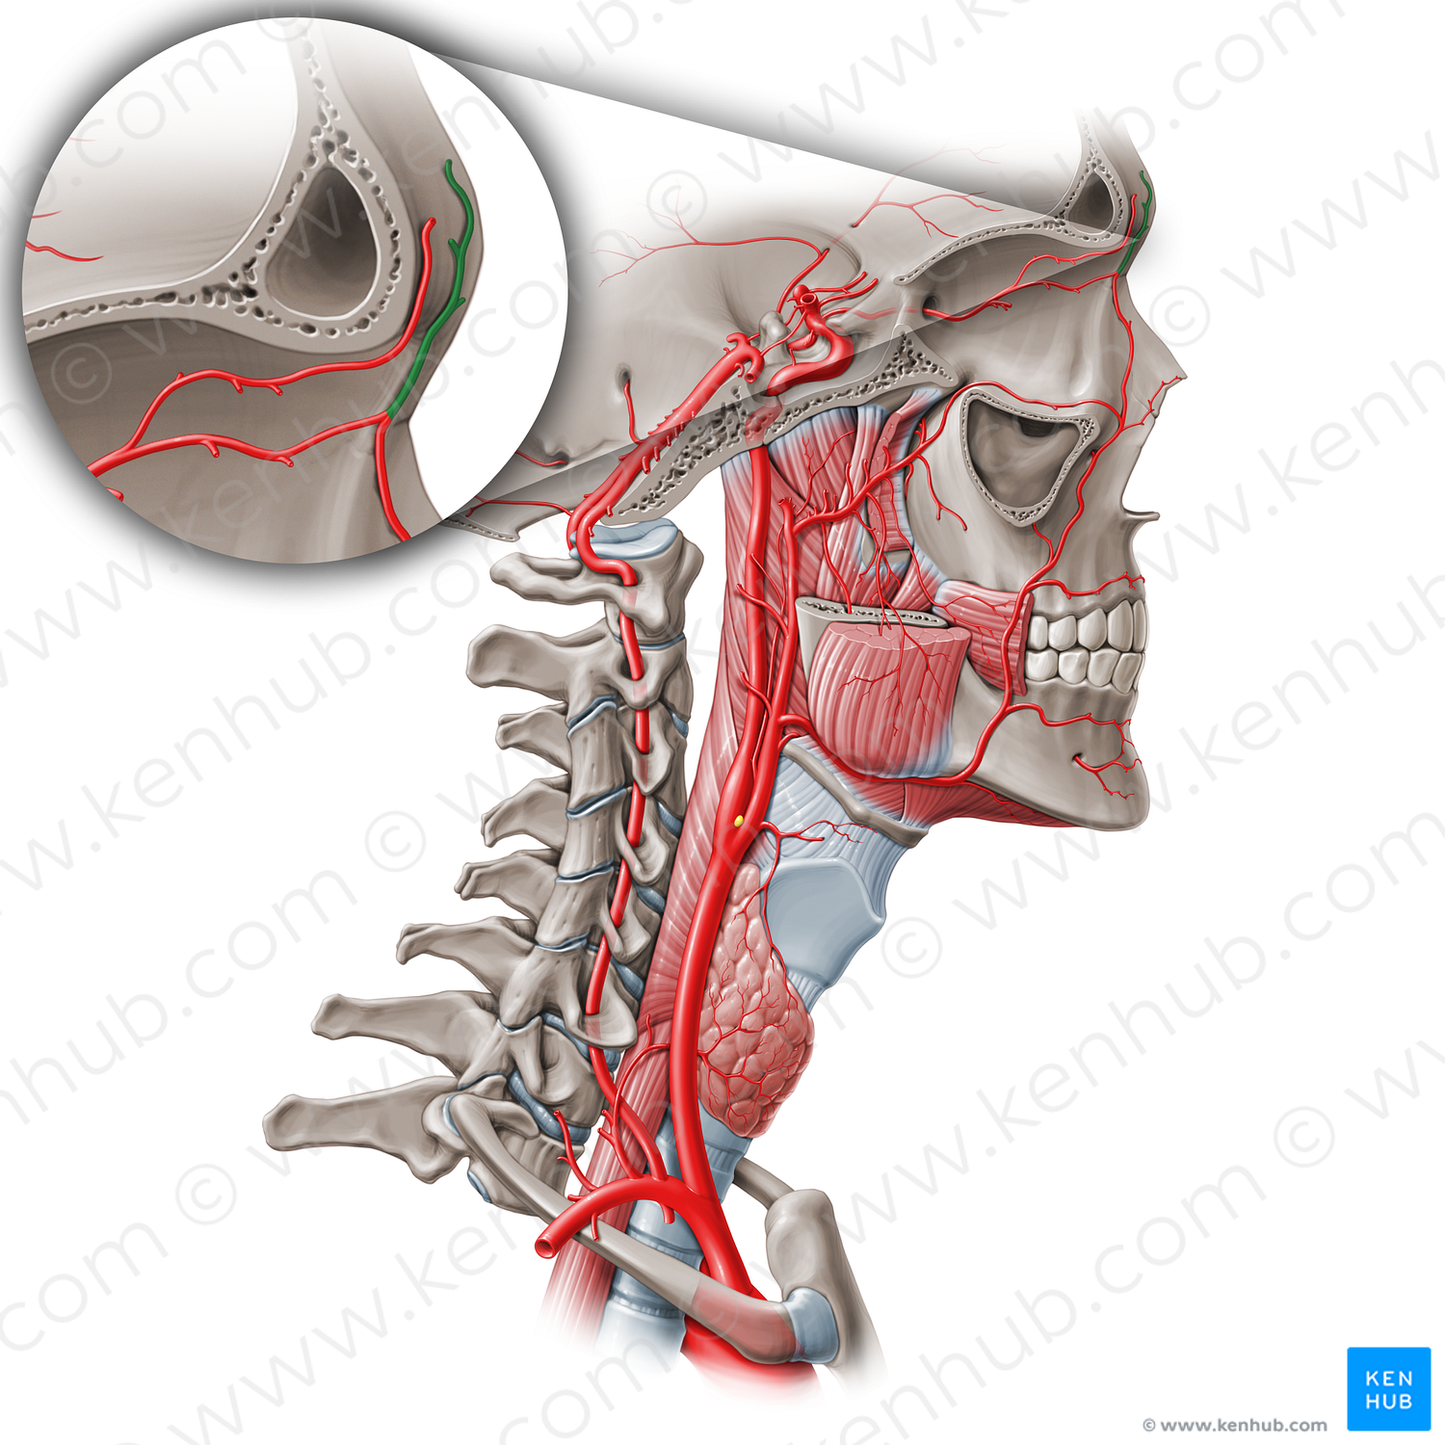 Supratrochlear artery (#1881)